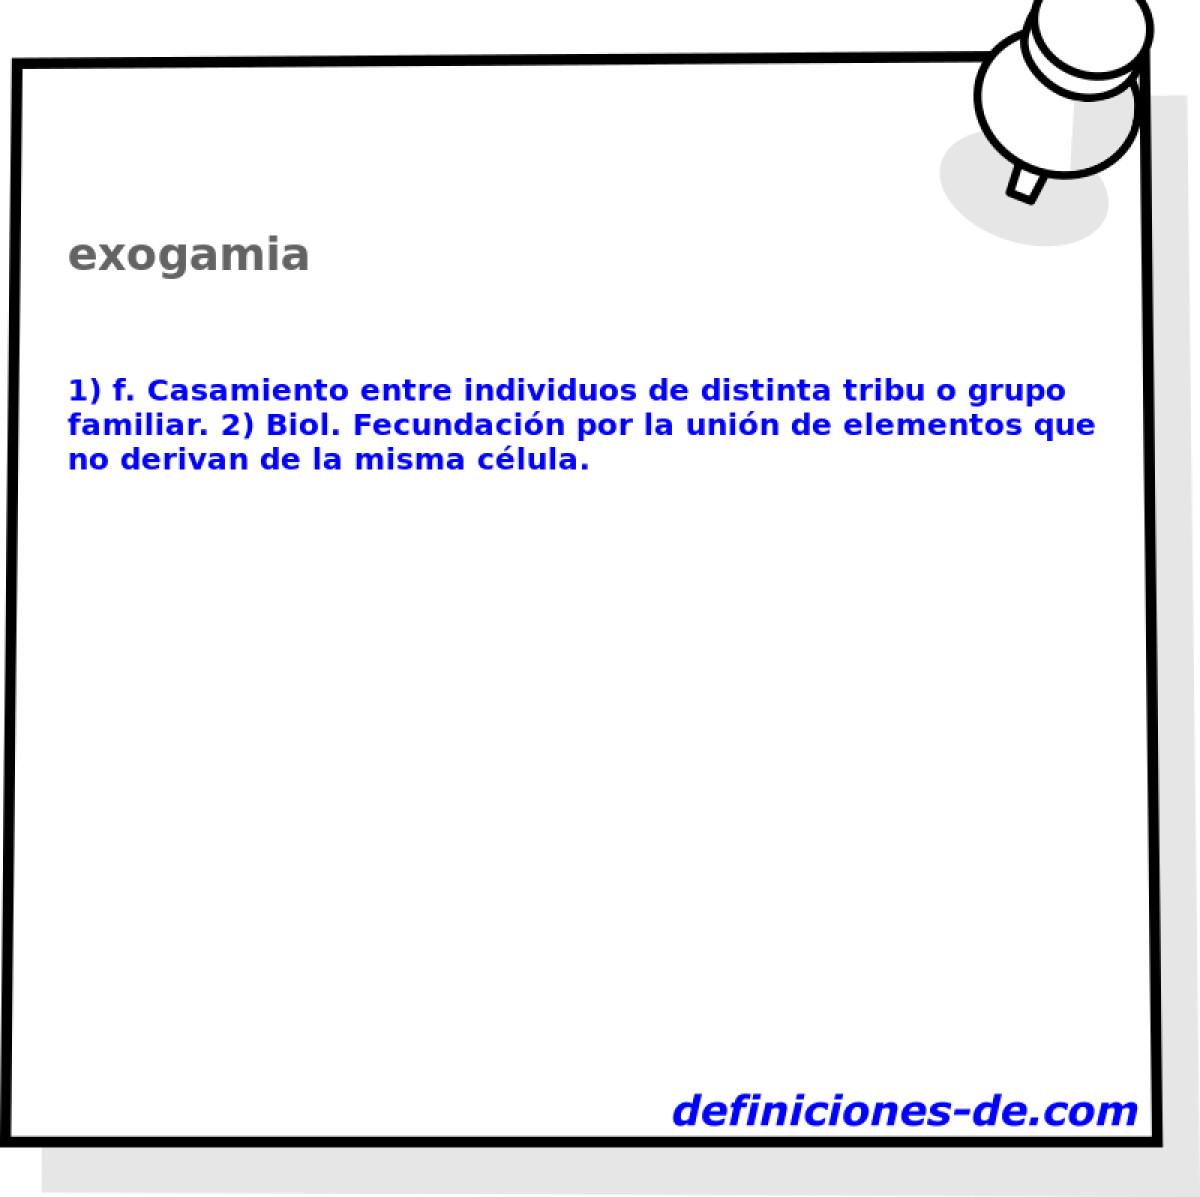 exogamia 